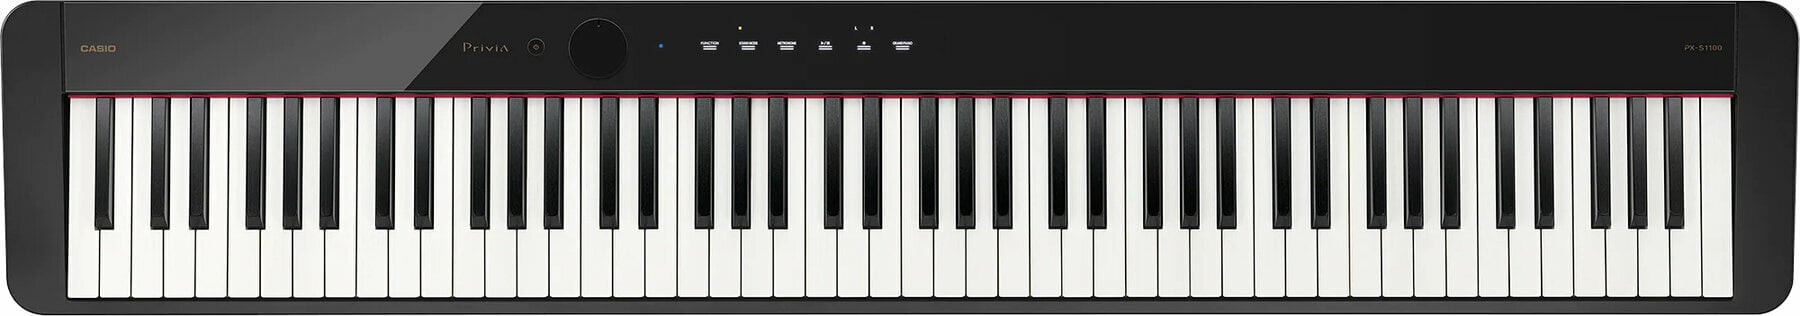 Digitalt scen piano Casio PX S1100  Digitalt scen piano